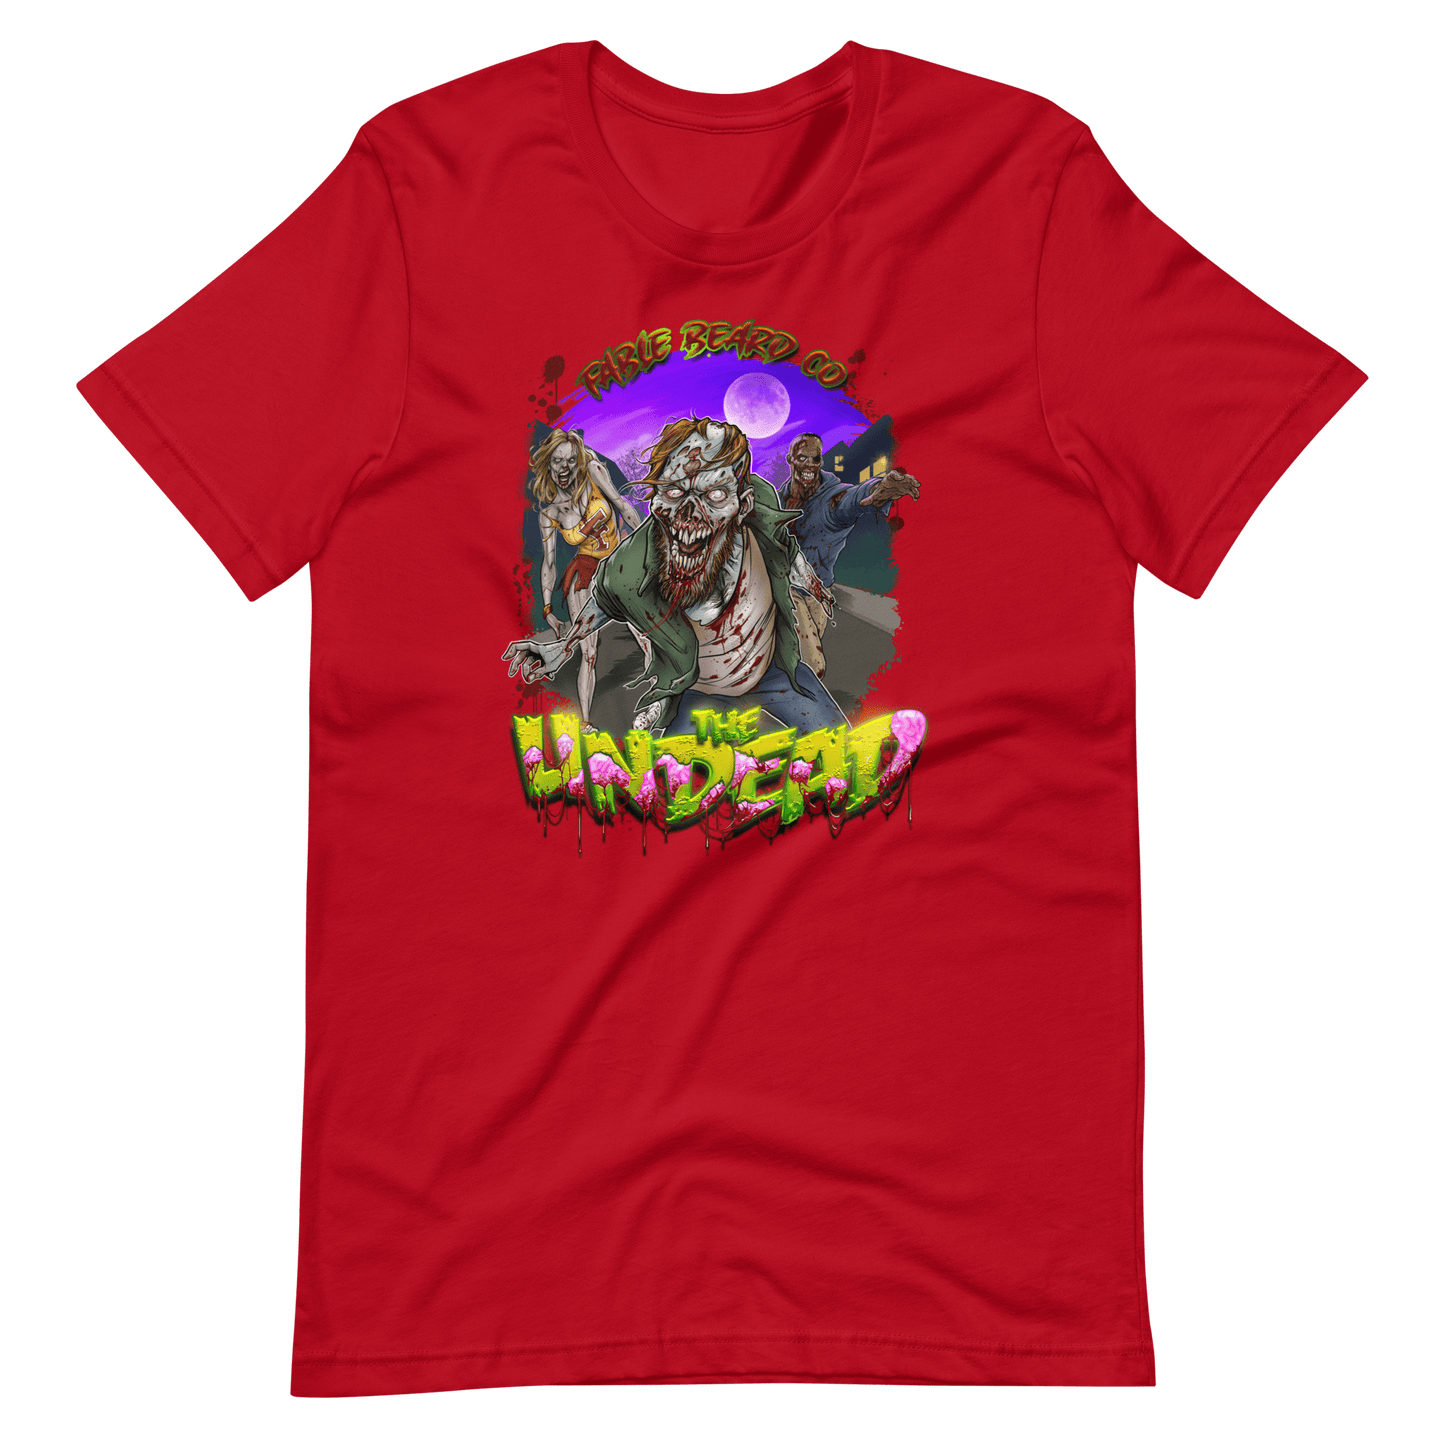 The Undead Unisex t-shirt